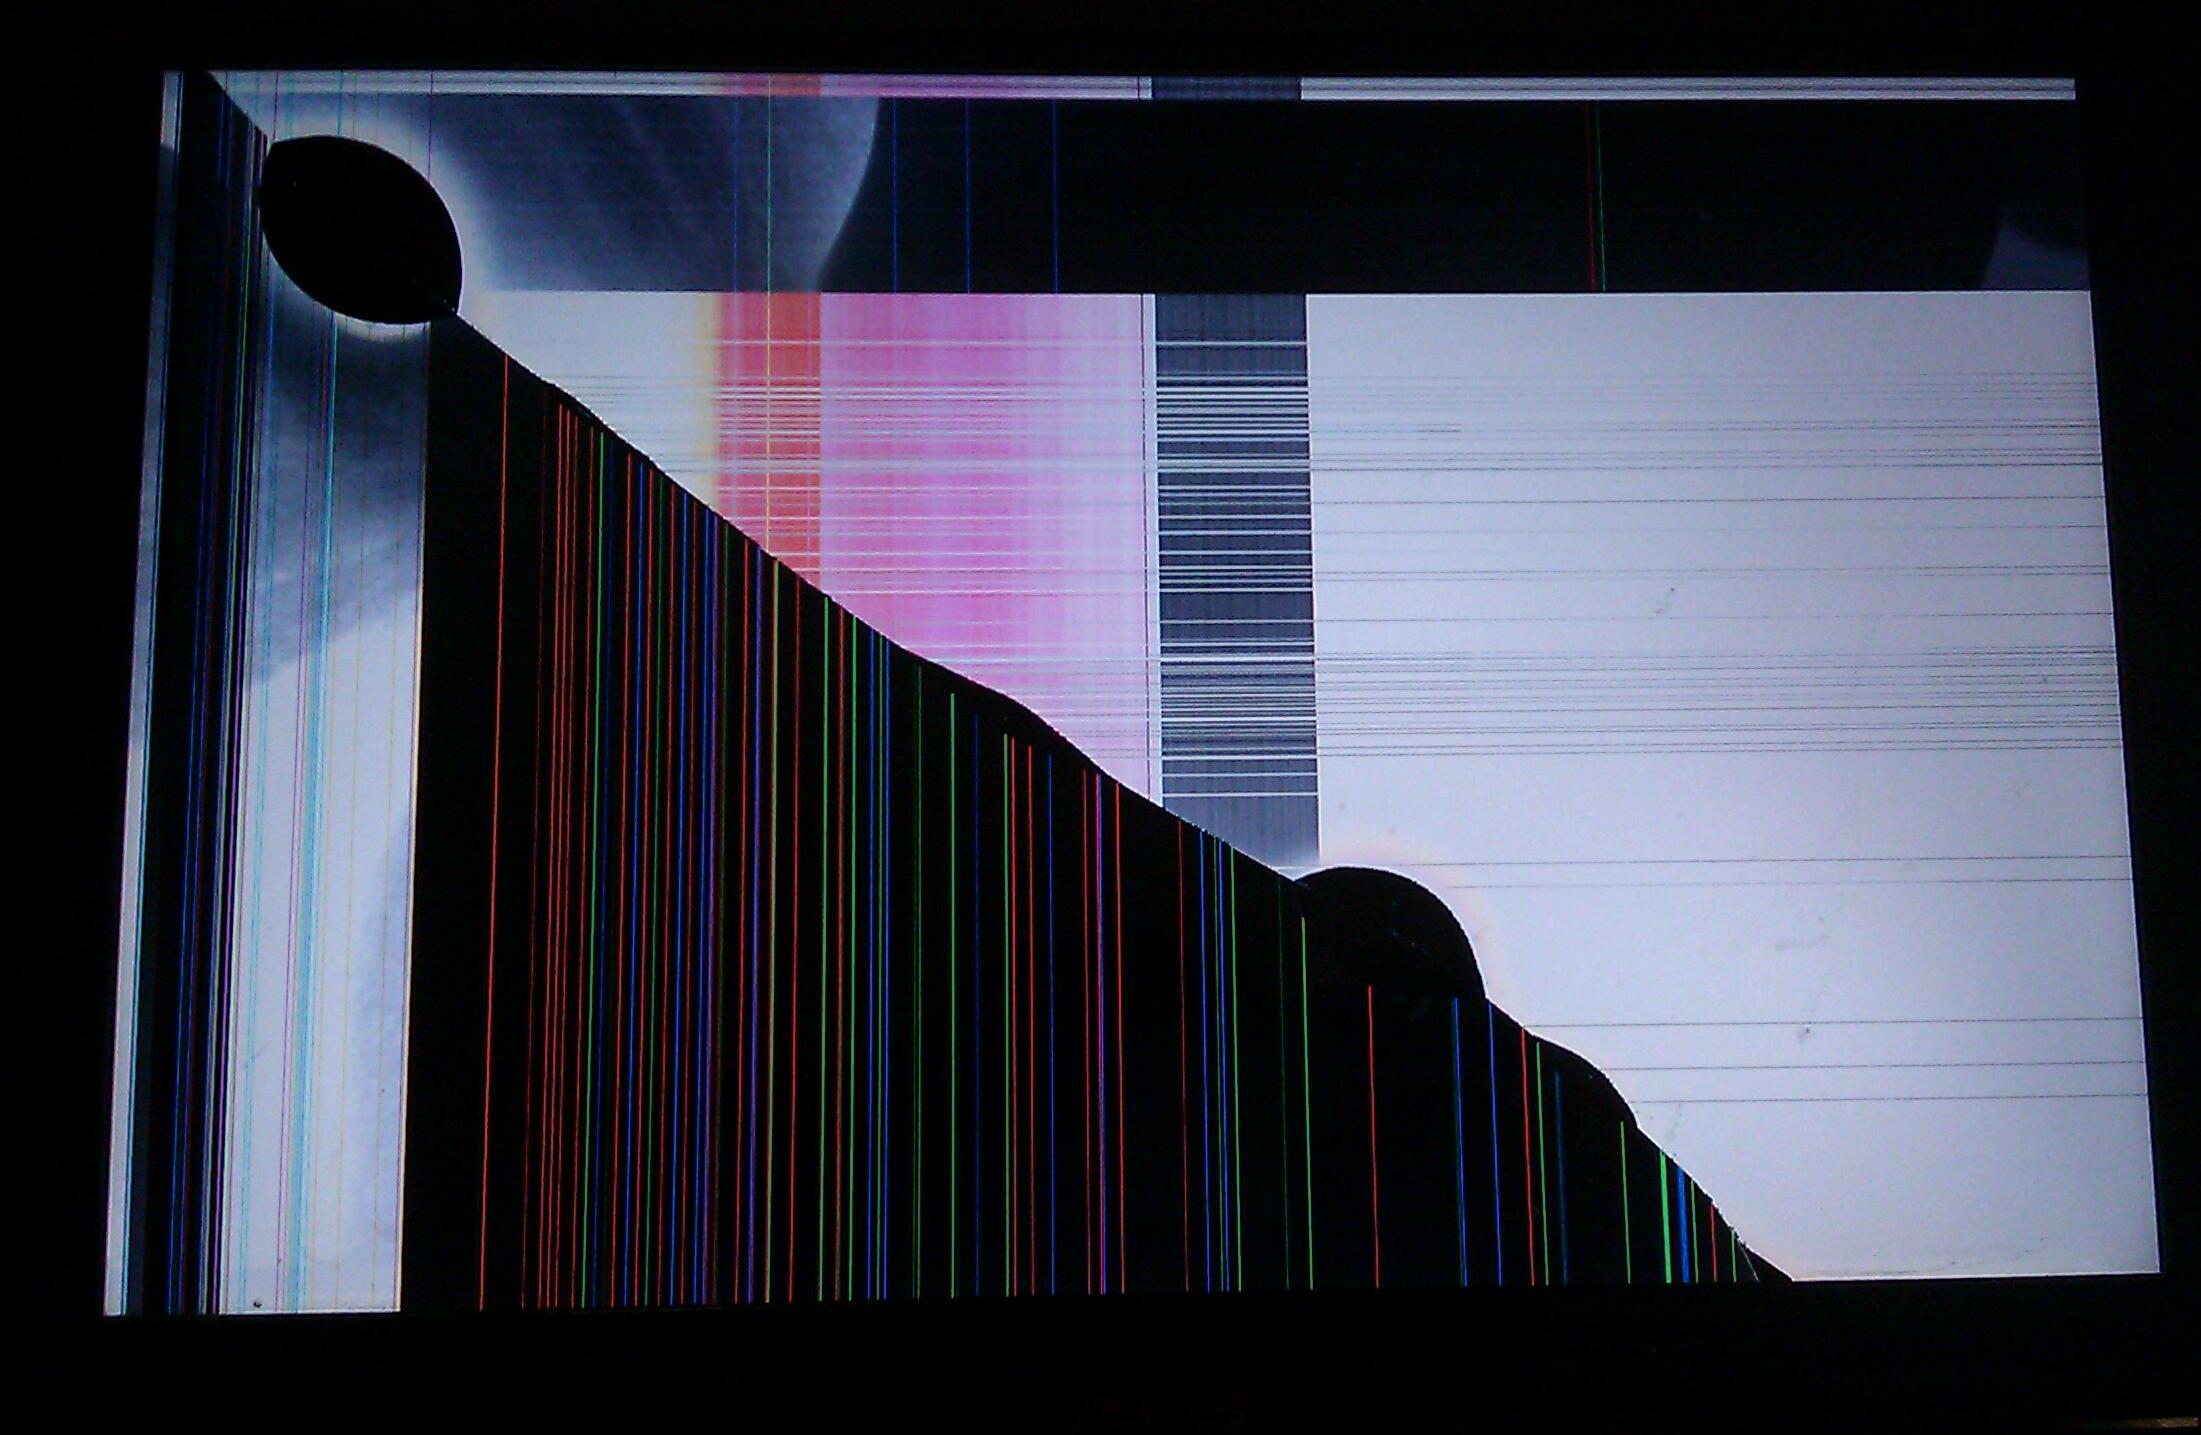 LCD TV Screen Wallpaper. Beautiful